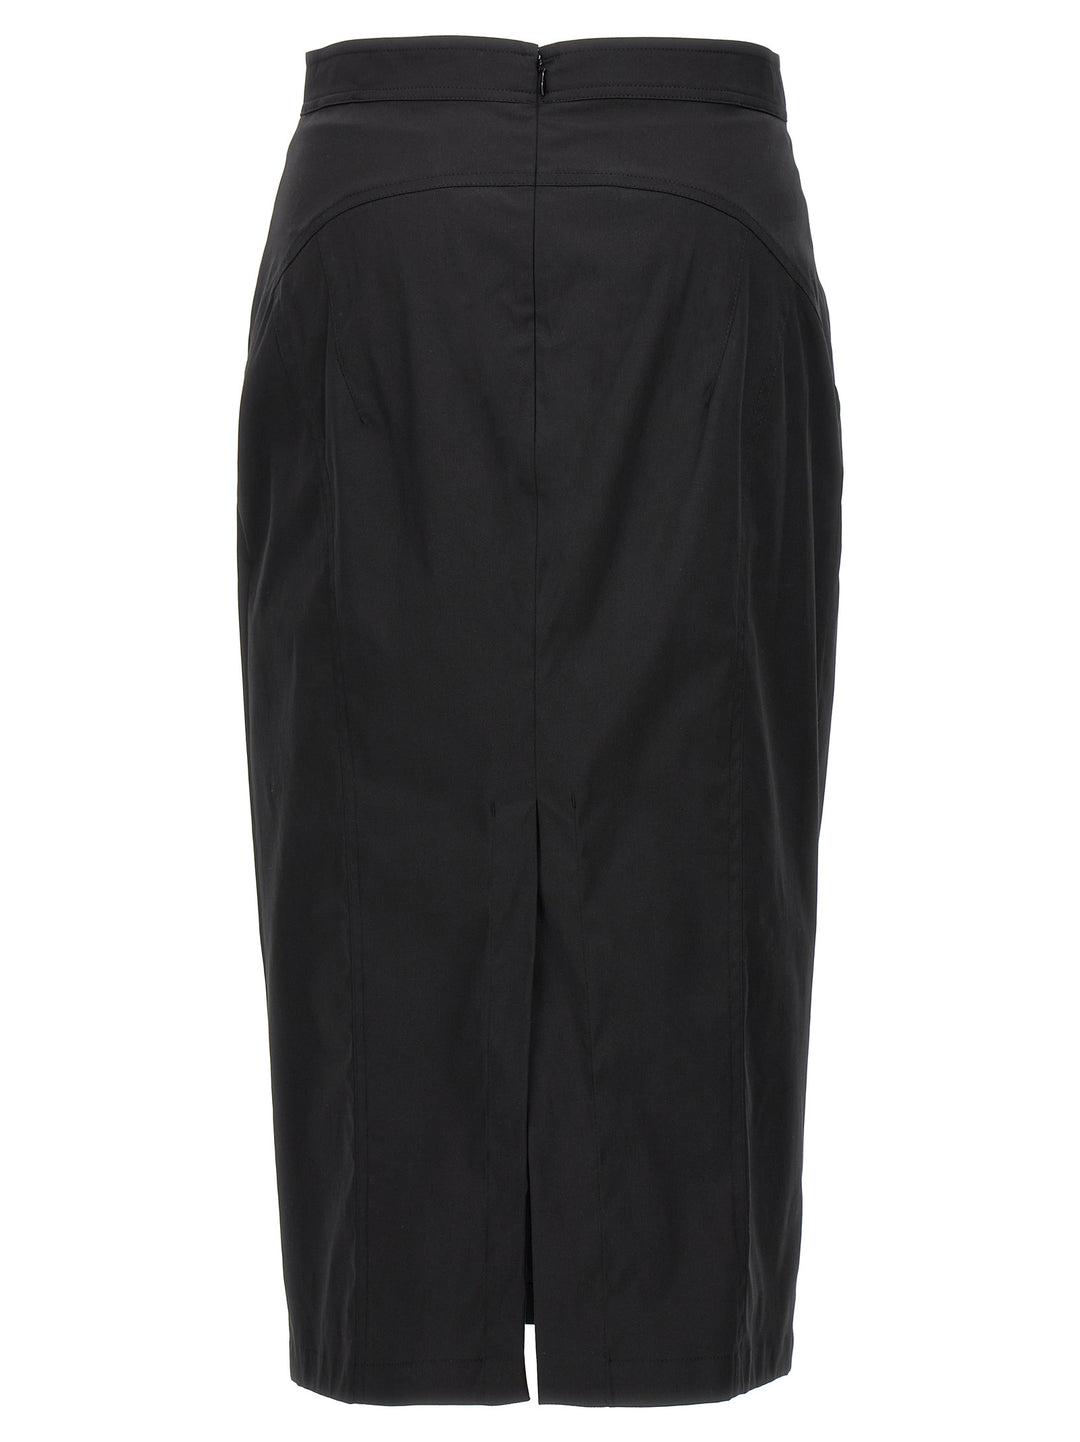 Longuette Skirt Gonne Nero